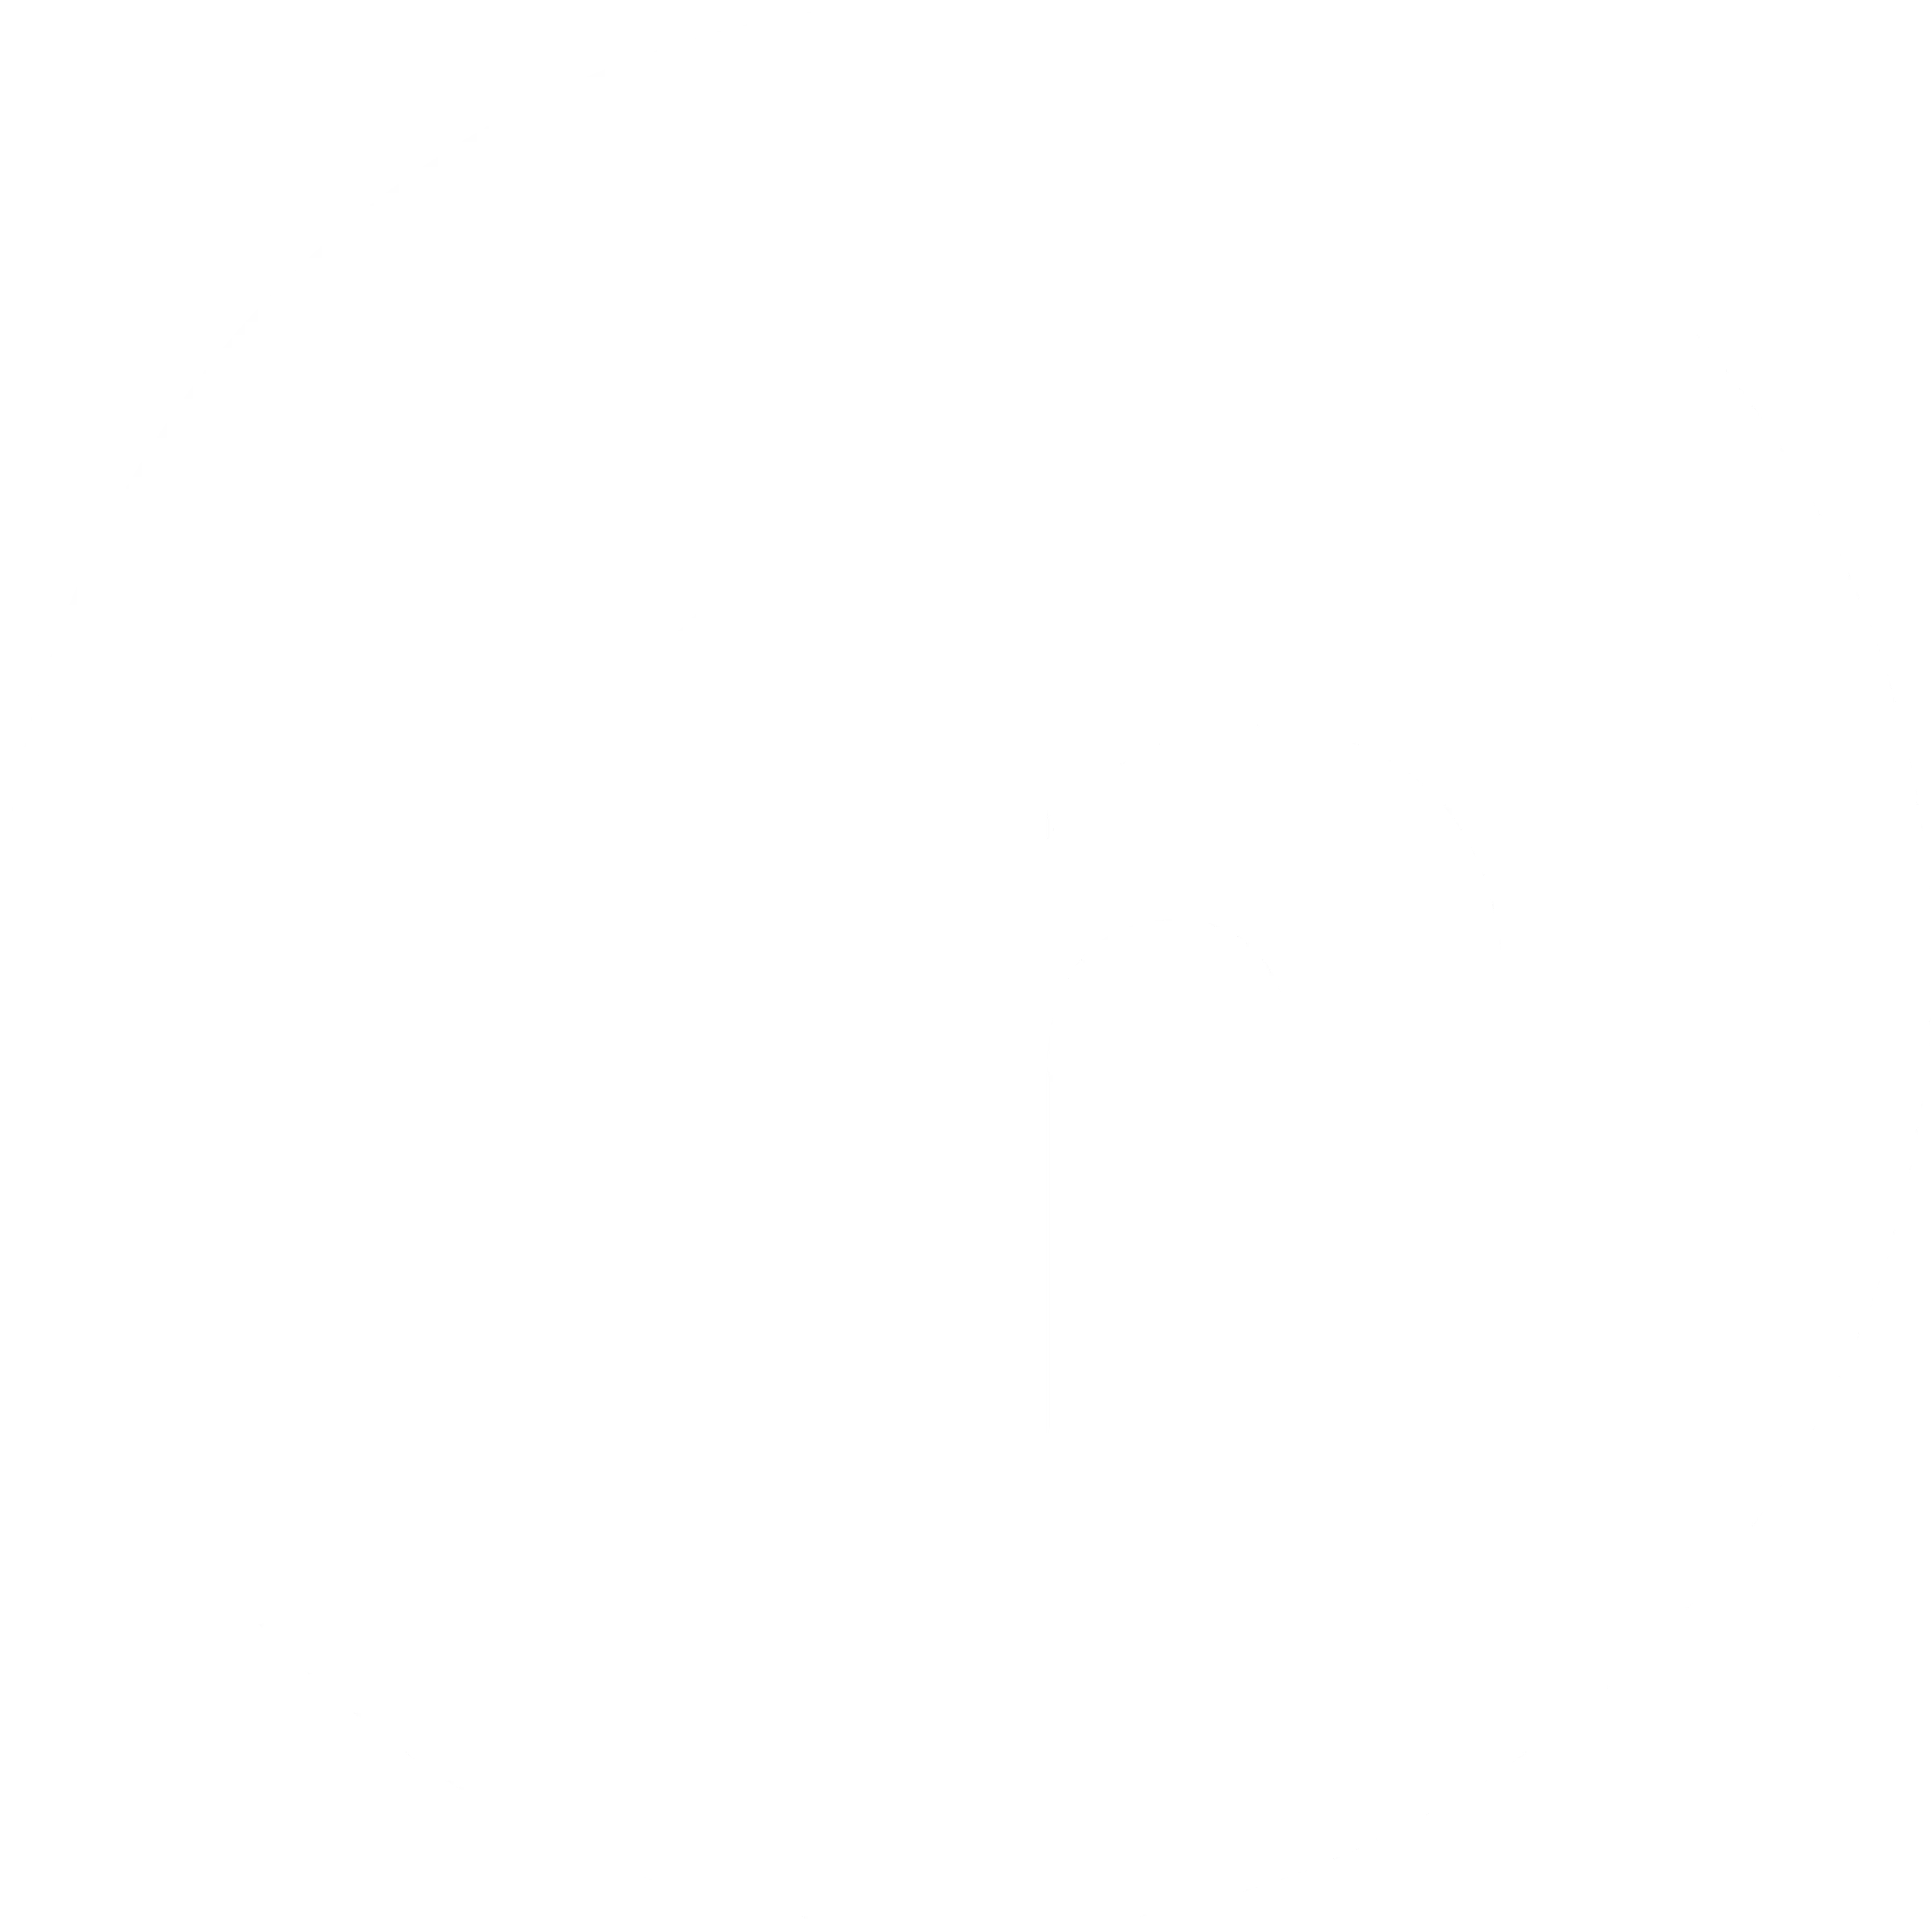 linkedin-icon-logo-black-and-white